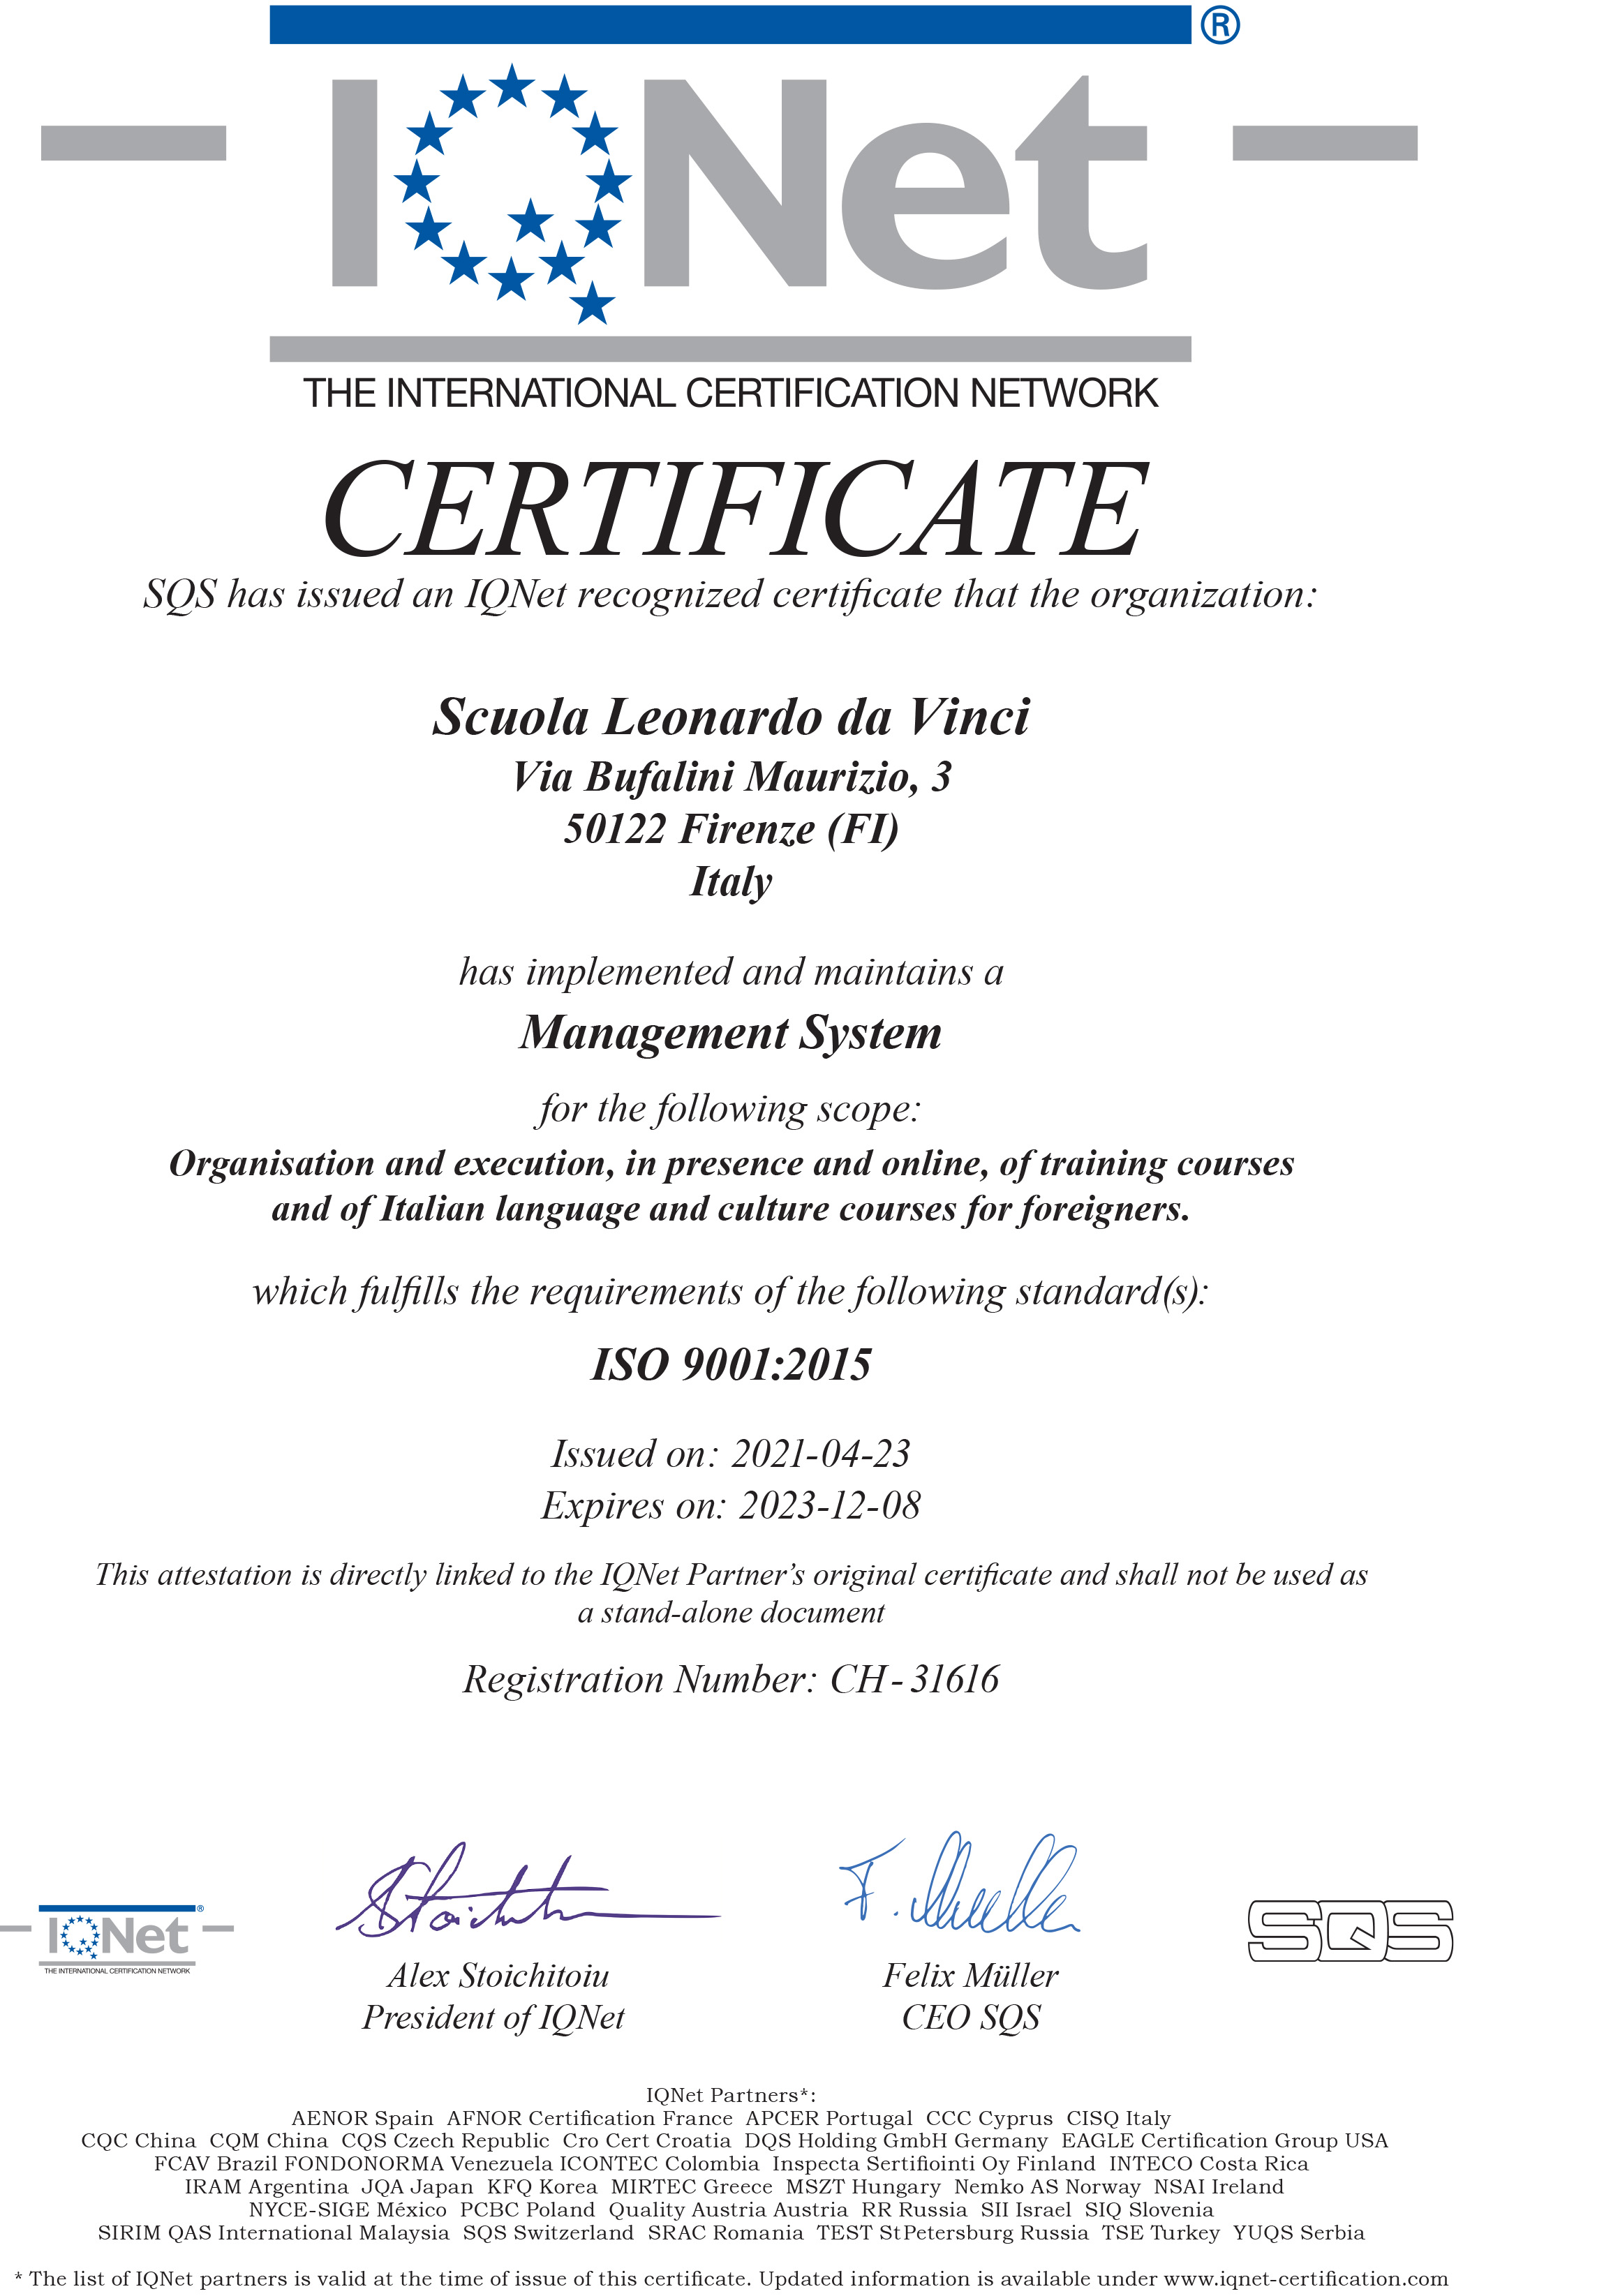 La nostra scuola italiana di Firenze è certificata in conformità con ISO 9001: 2015, lo standard internazionale riconosciuto per i sistemi di gestione della qualità